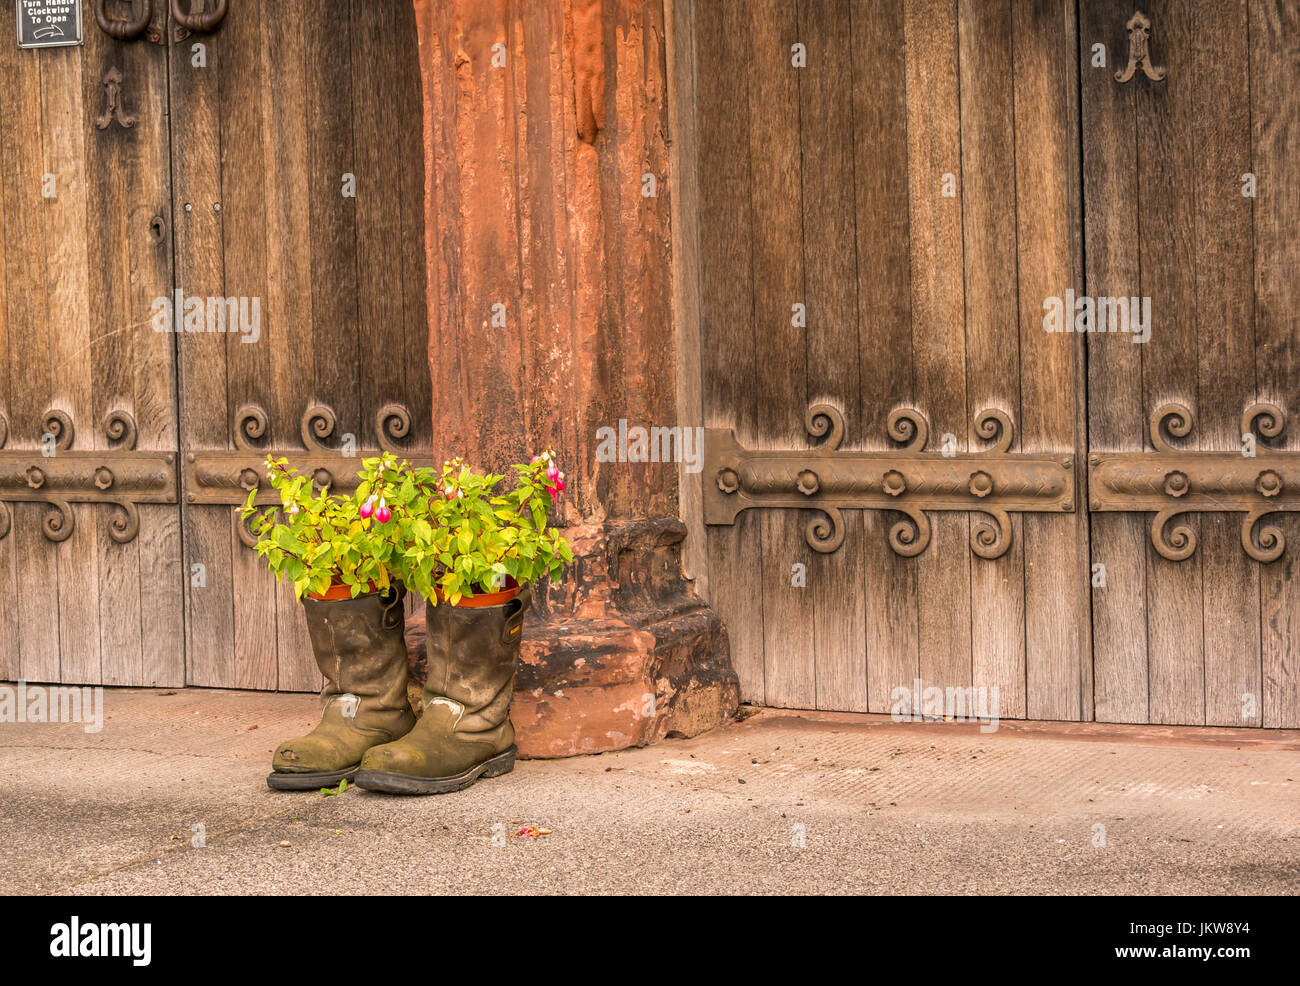 Los hombres botas viejas utilizada como maceta inusuales contenedores fuera antiguo de madera, las puertas de la iglesia St Mary's Church, Haddington, East Lothian, Escocia, Reino Unido Foto de stock